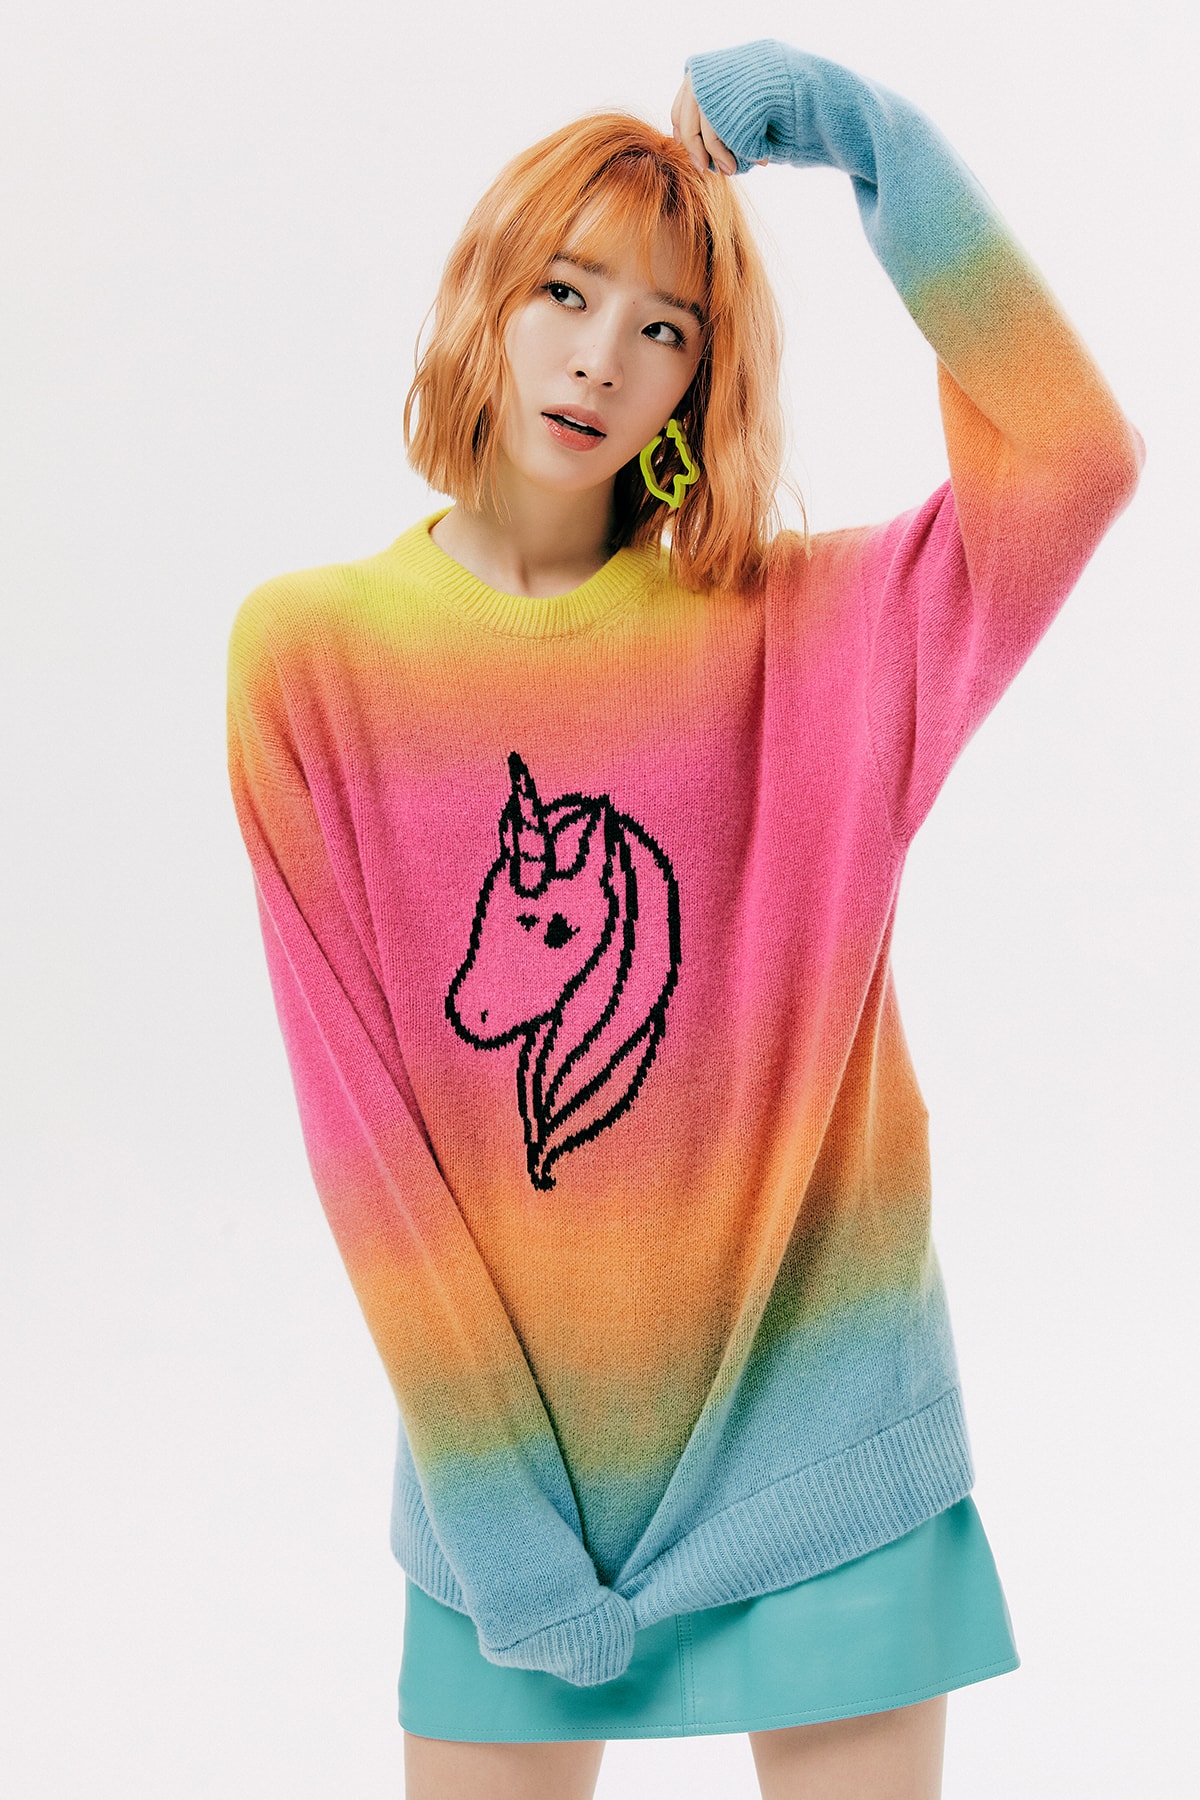 IRENEISGOOD Label Fall/Winter 2020 Collection Lookbook Unicorn Sweater Rainbow